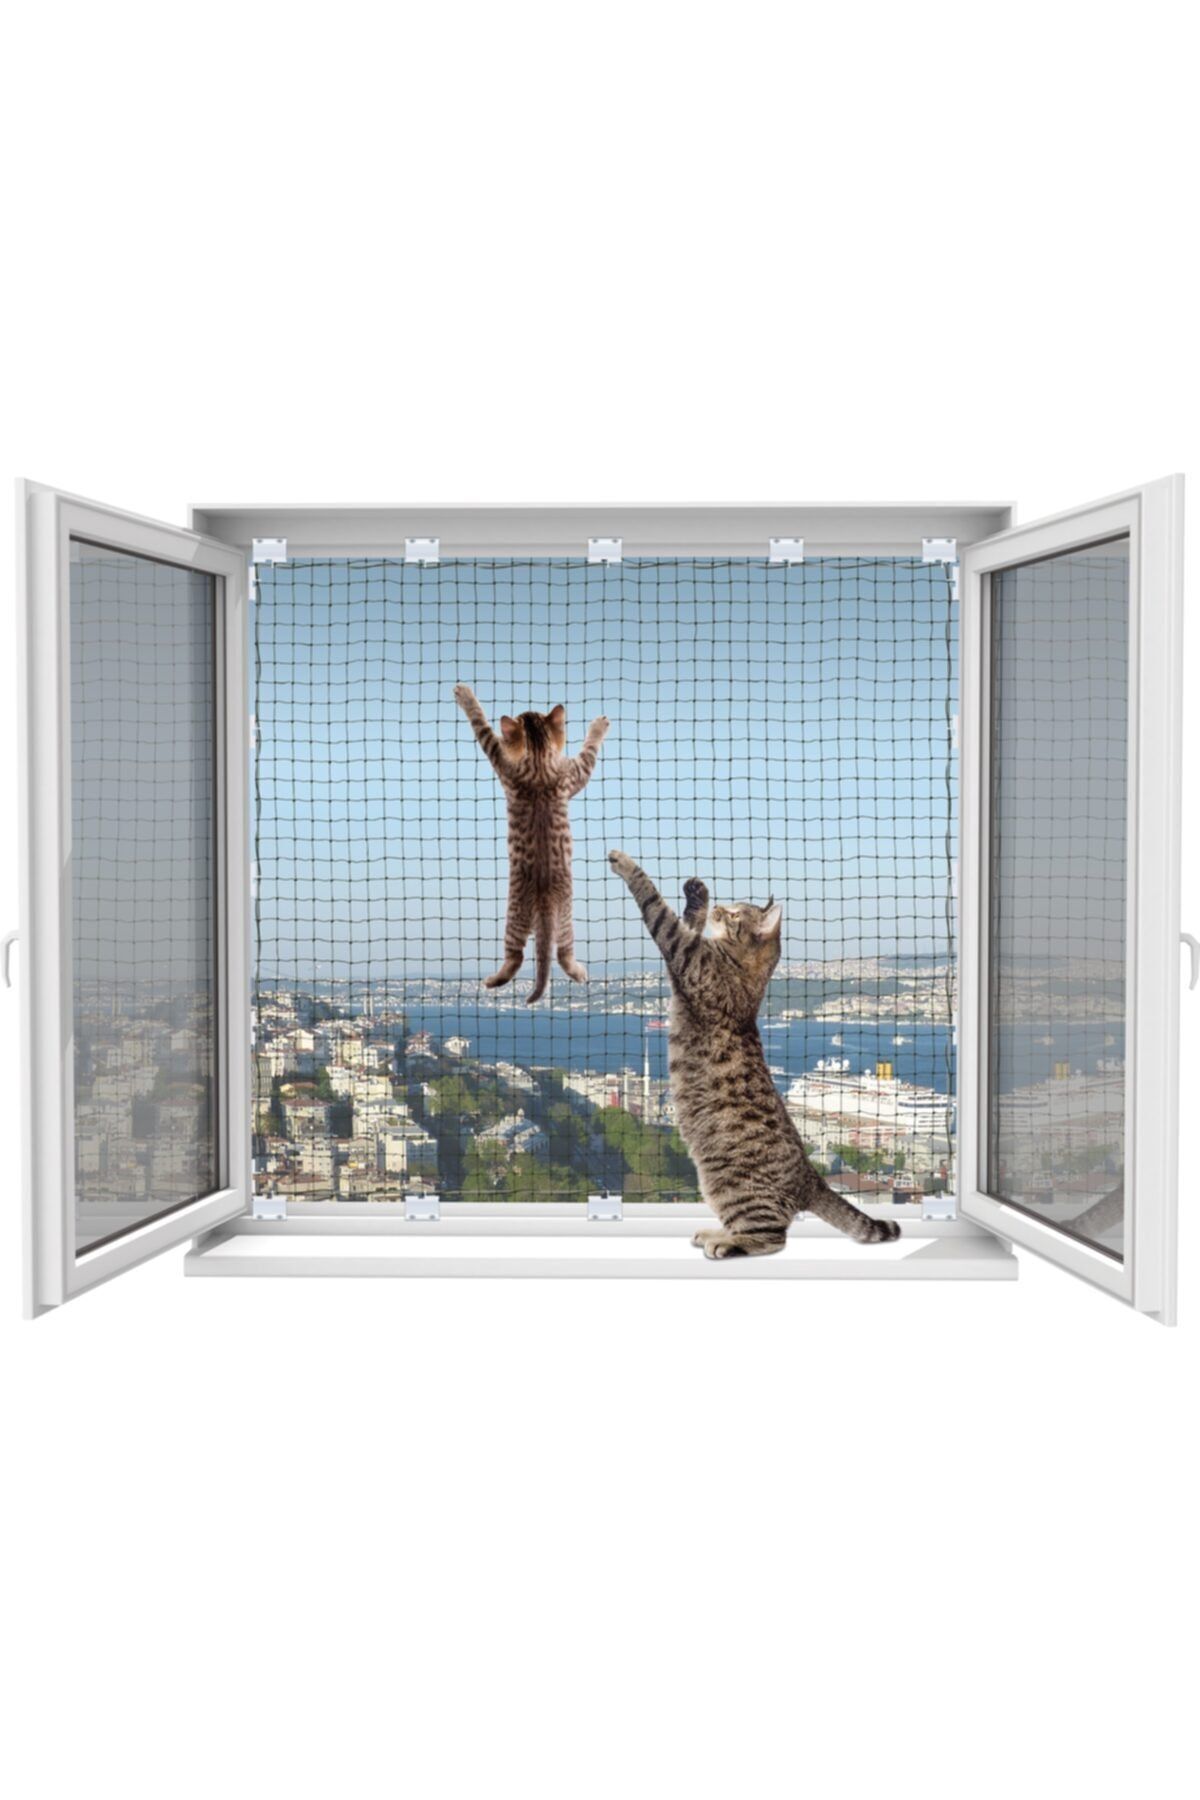 WINBLOCK Kediler Için Pencere Güvenlik Ağı, Kedi Filesi Sistemi (80 X 140 CM'YE KADAR 1 PENCERE)